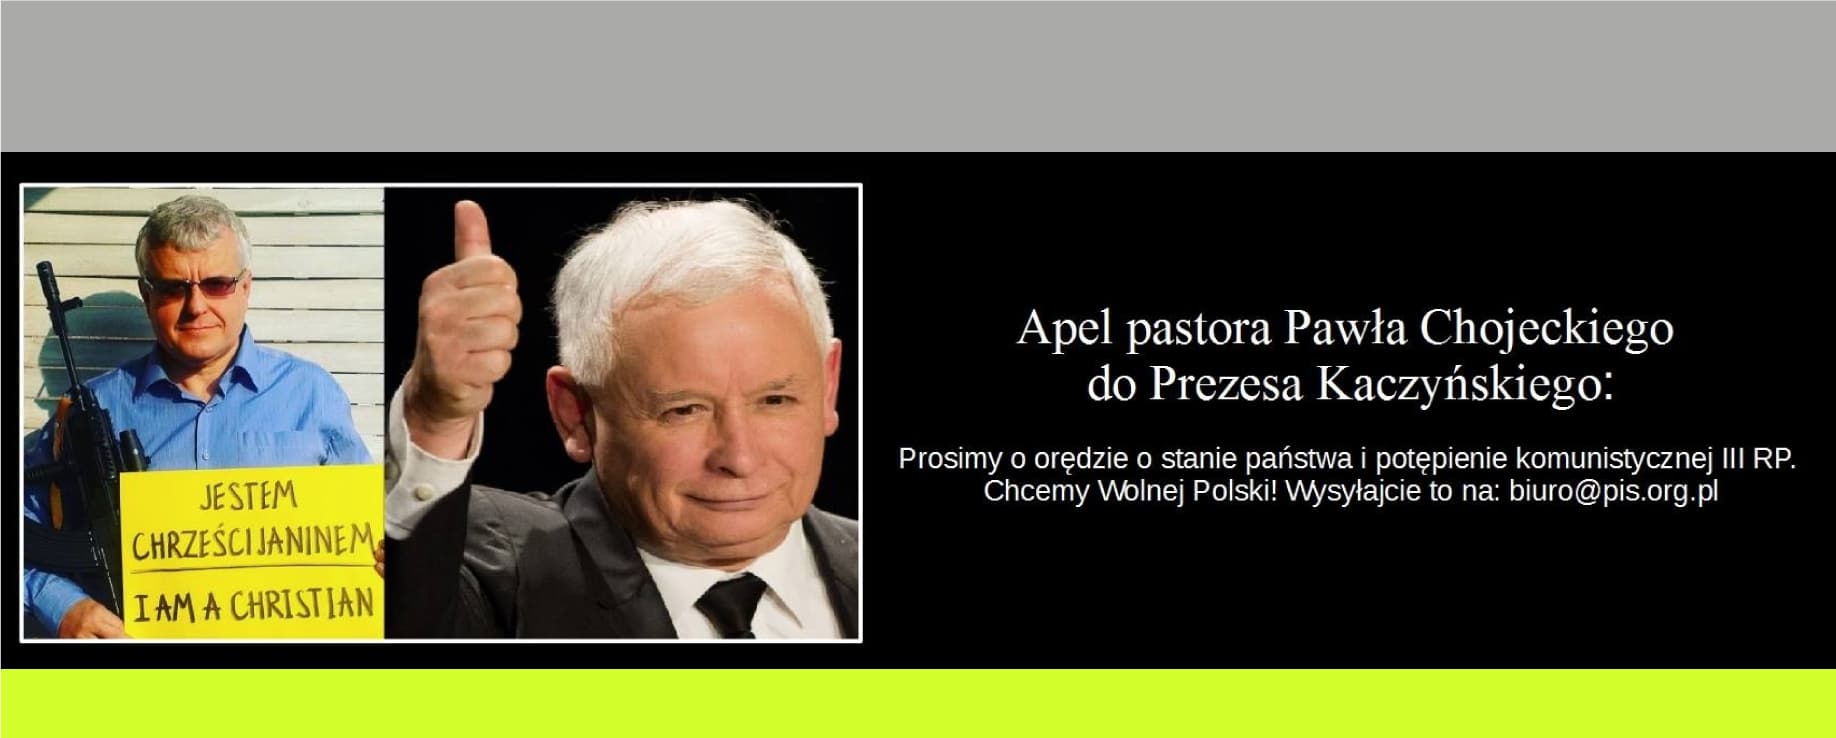 Apel pastora Pawła Chojeckiego do Prezesa Kaczyńskiego